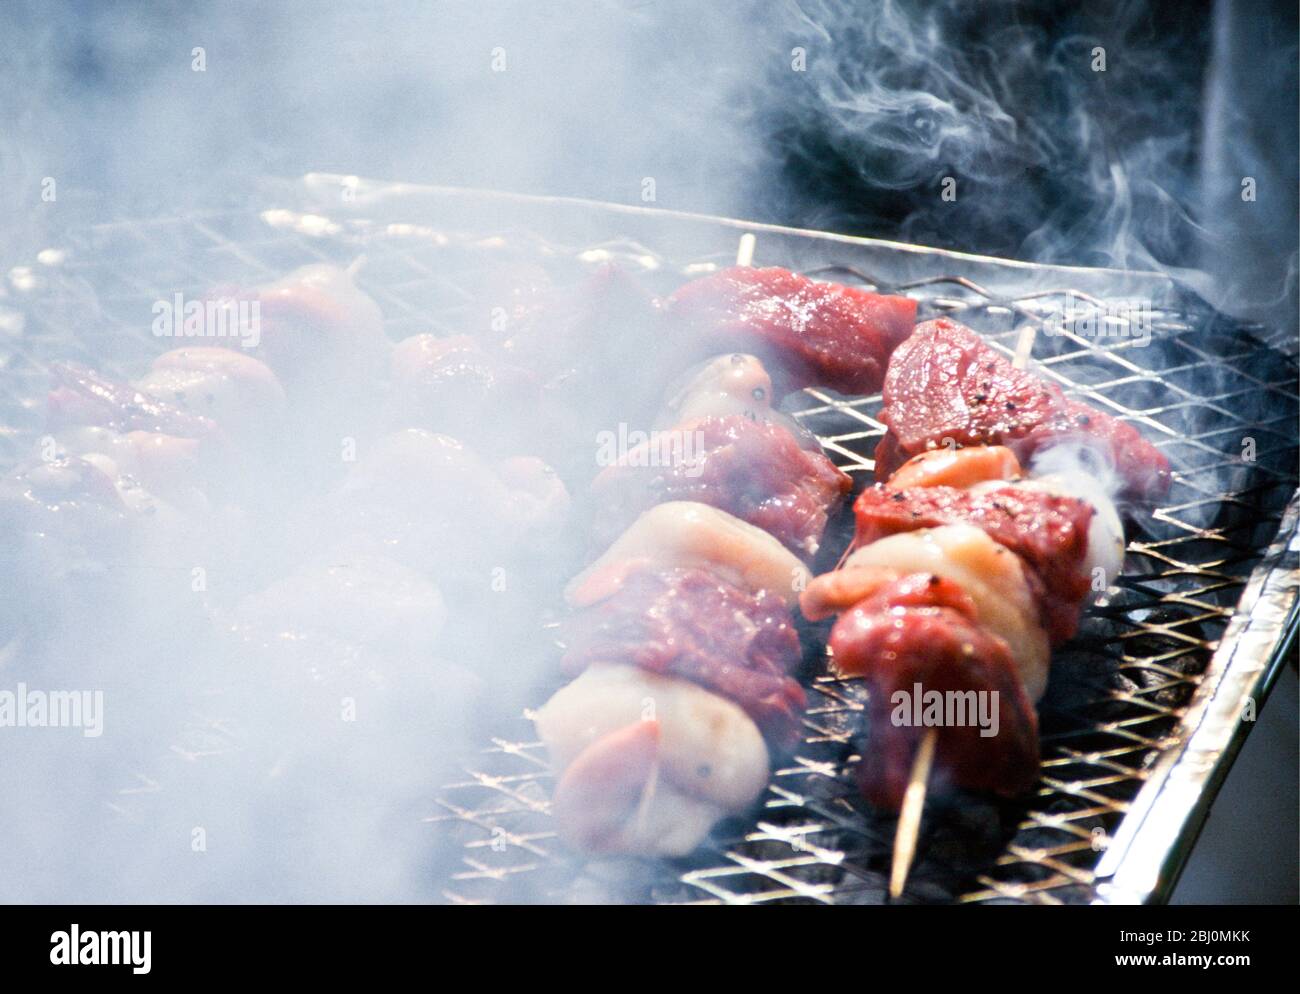 Griller des pétoncles et des brochettes de steak sur un barbecue au charbon de bois - Banque D'Images